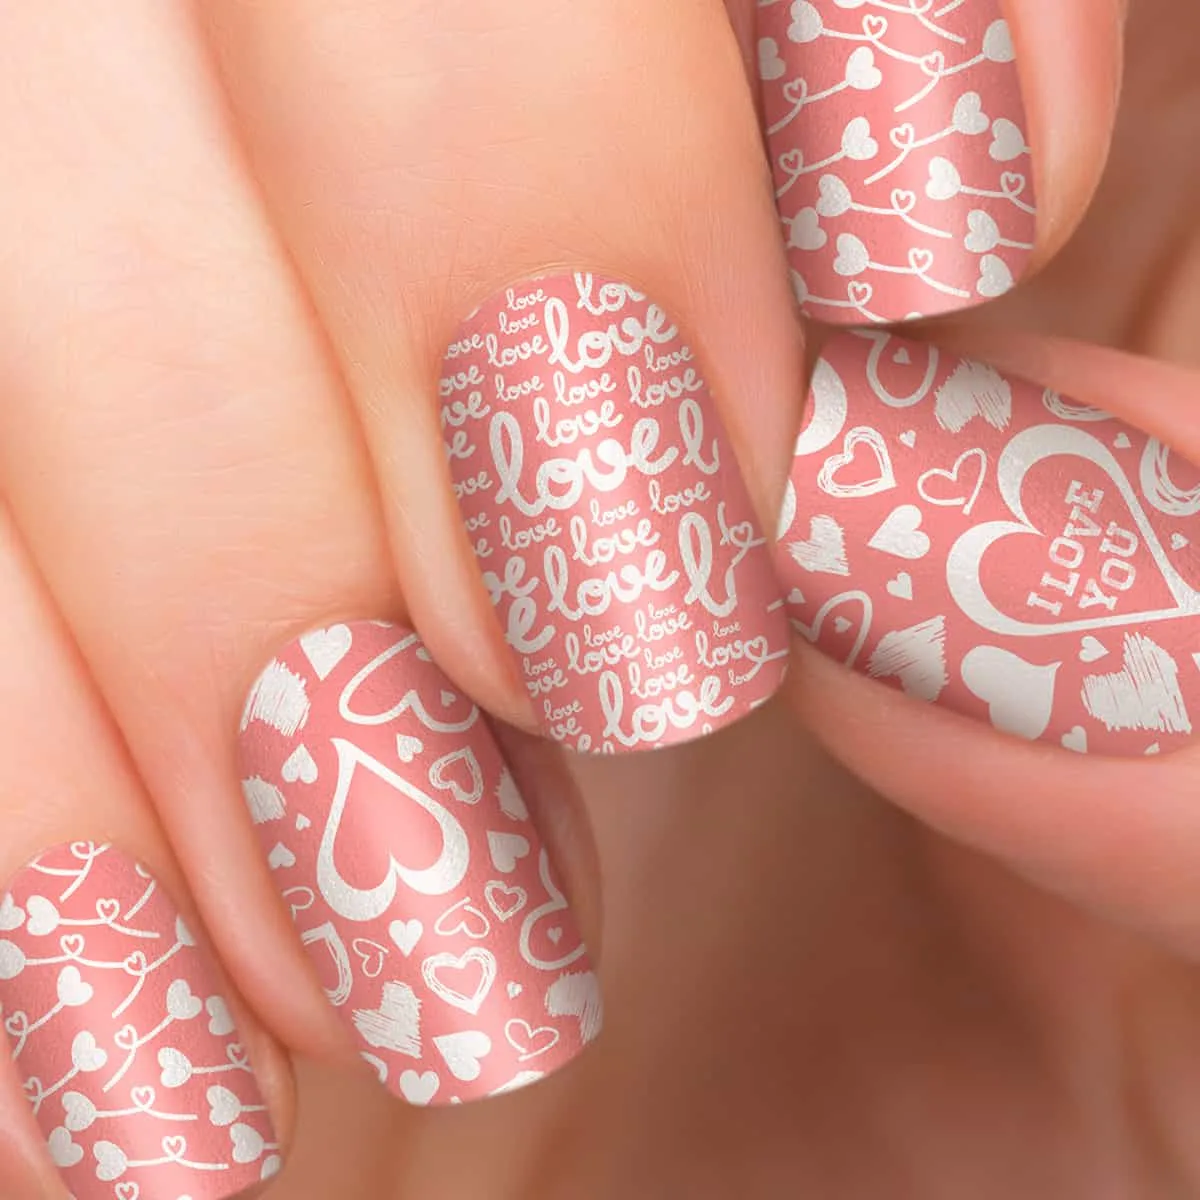 nail art designs - soft pink nail art with hearts